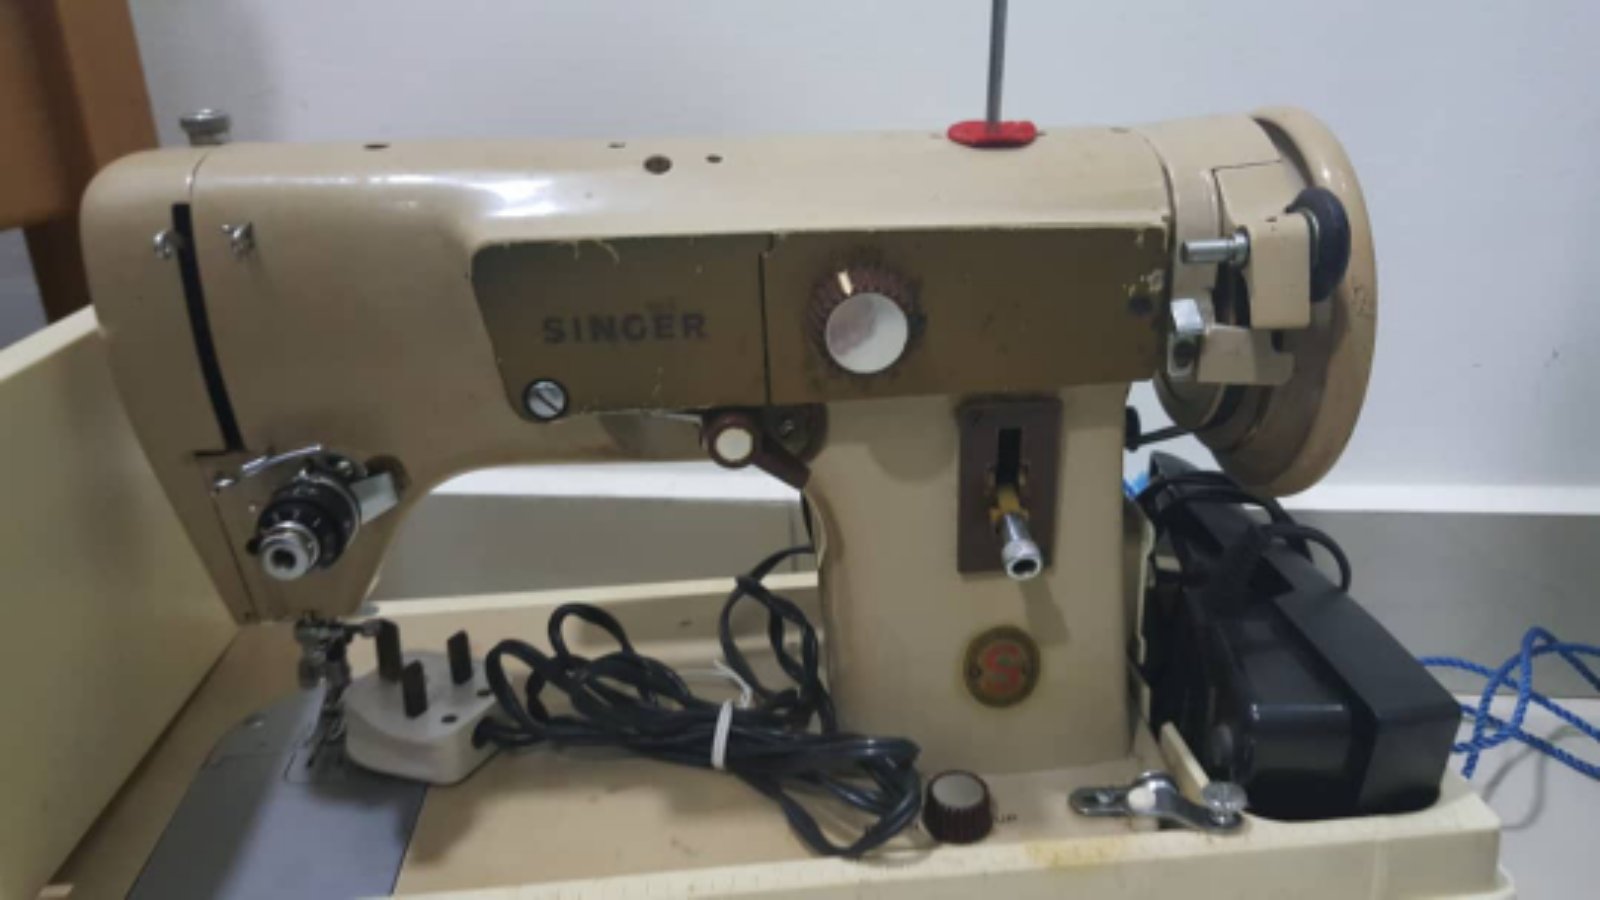 Repair Olw Sewing Machine